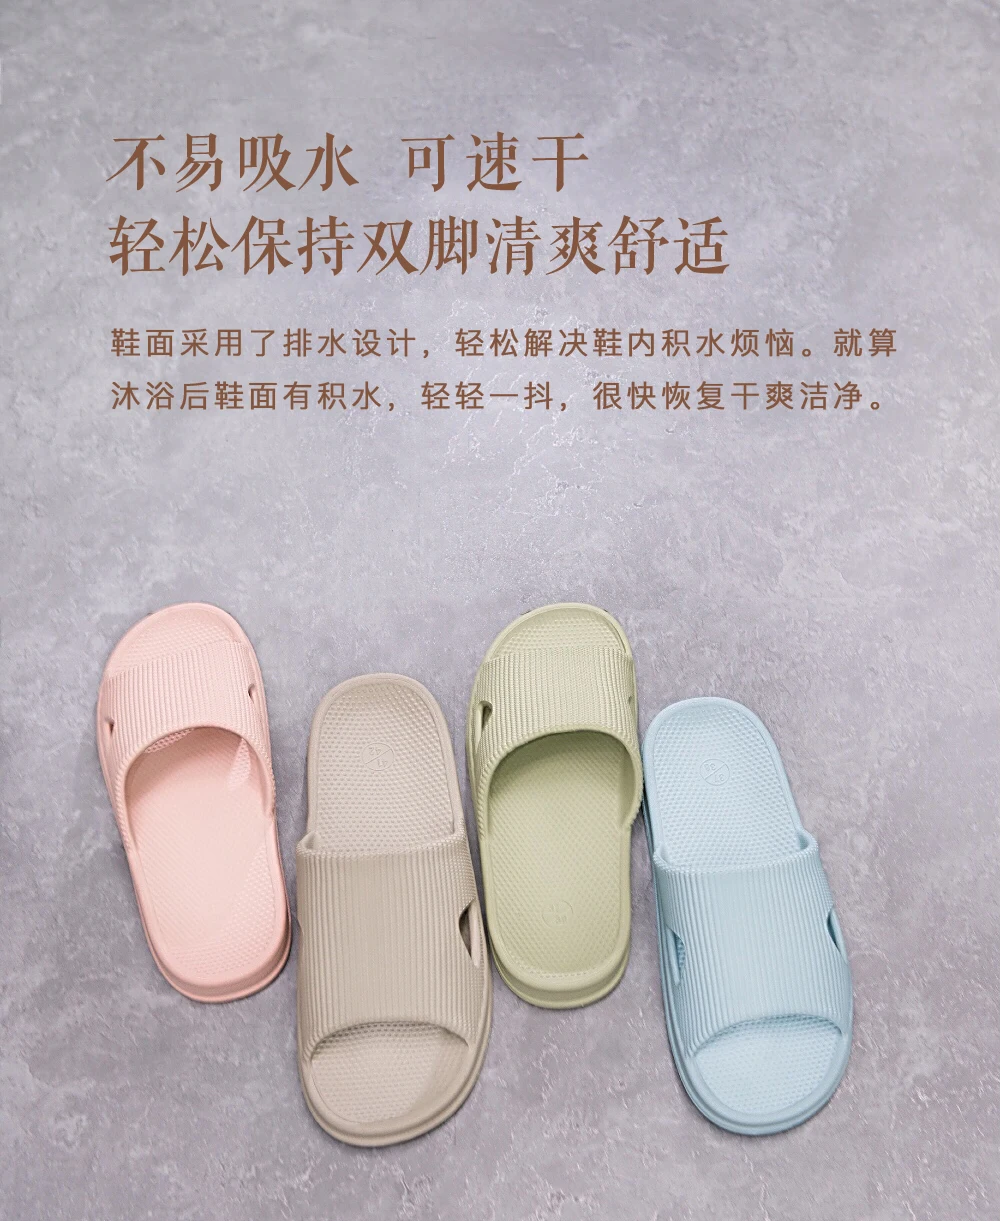 Оригинальные тапочки Xiaomi mijia мягкие женские и мужские сандалии для купания детская повседневная обувь нескользящие домашние тапочки для душа